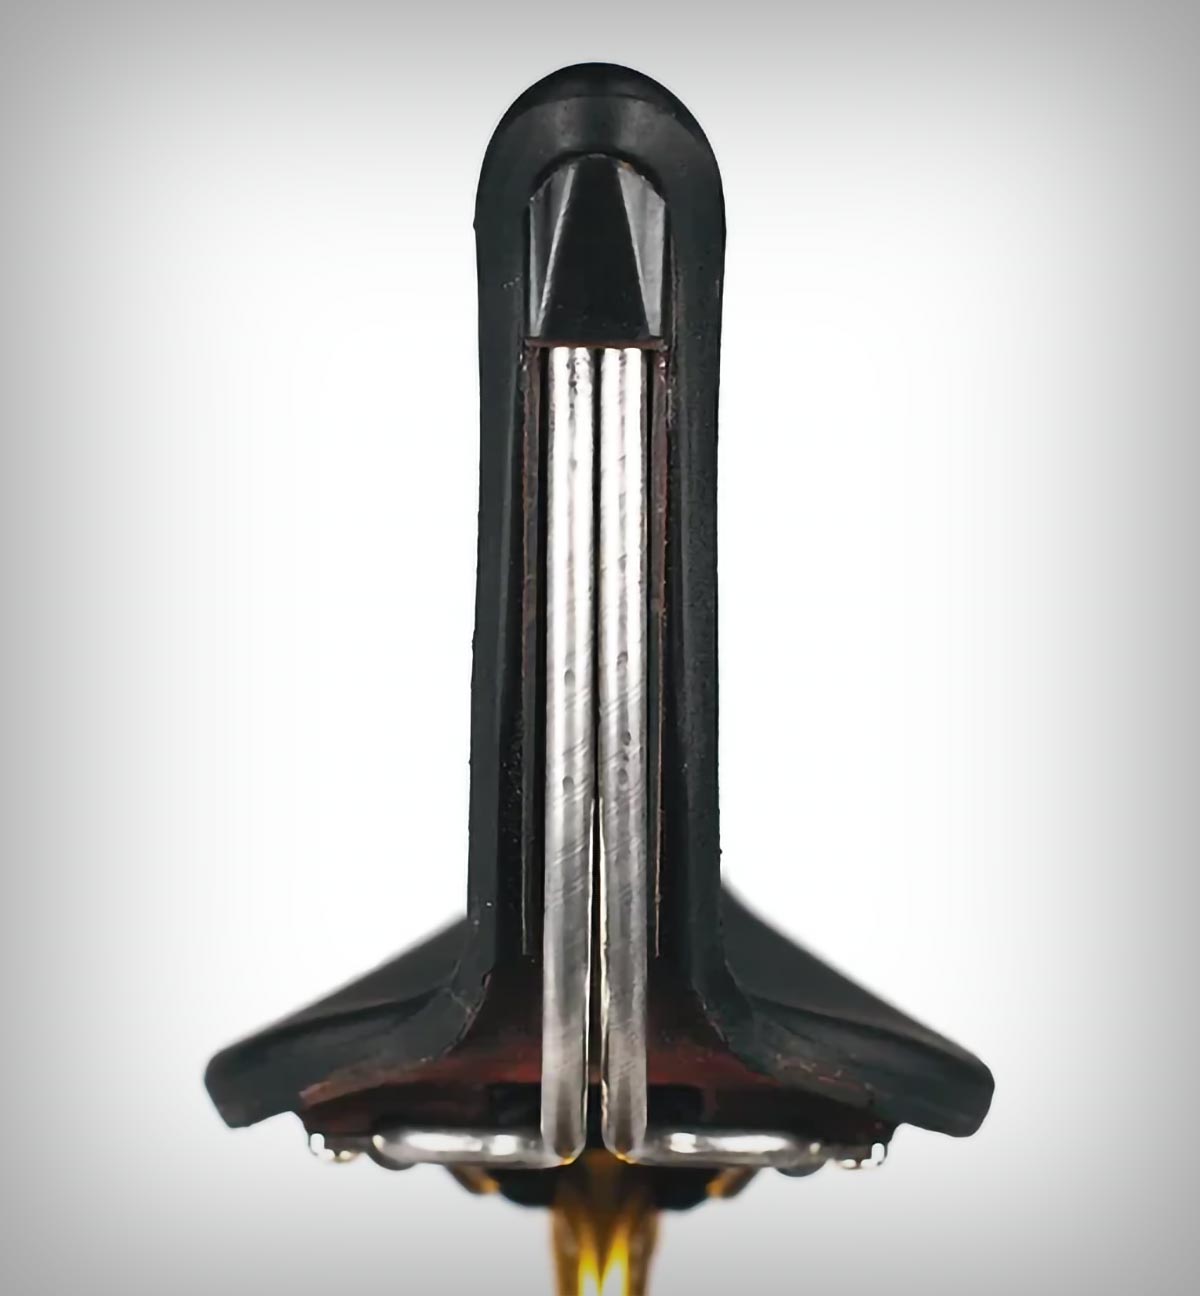 SaddleSpur, un sillín con respaldo de diseño 'muy sugerente' que promete más potencia y rendimiento con menos esfuerzo